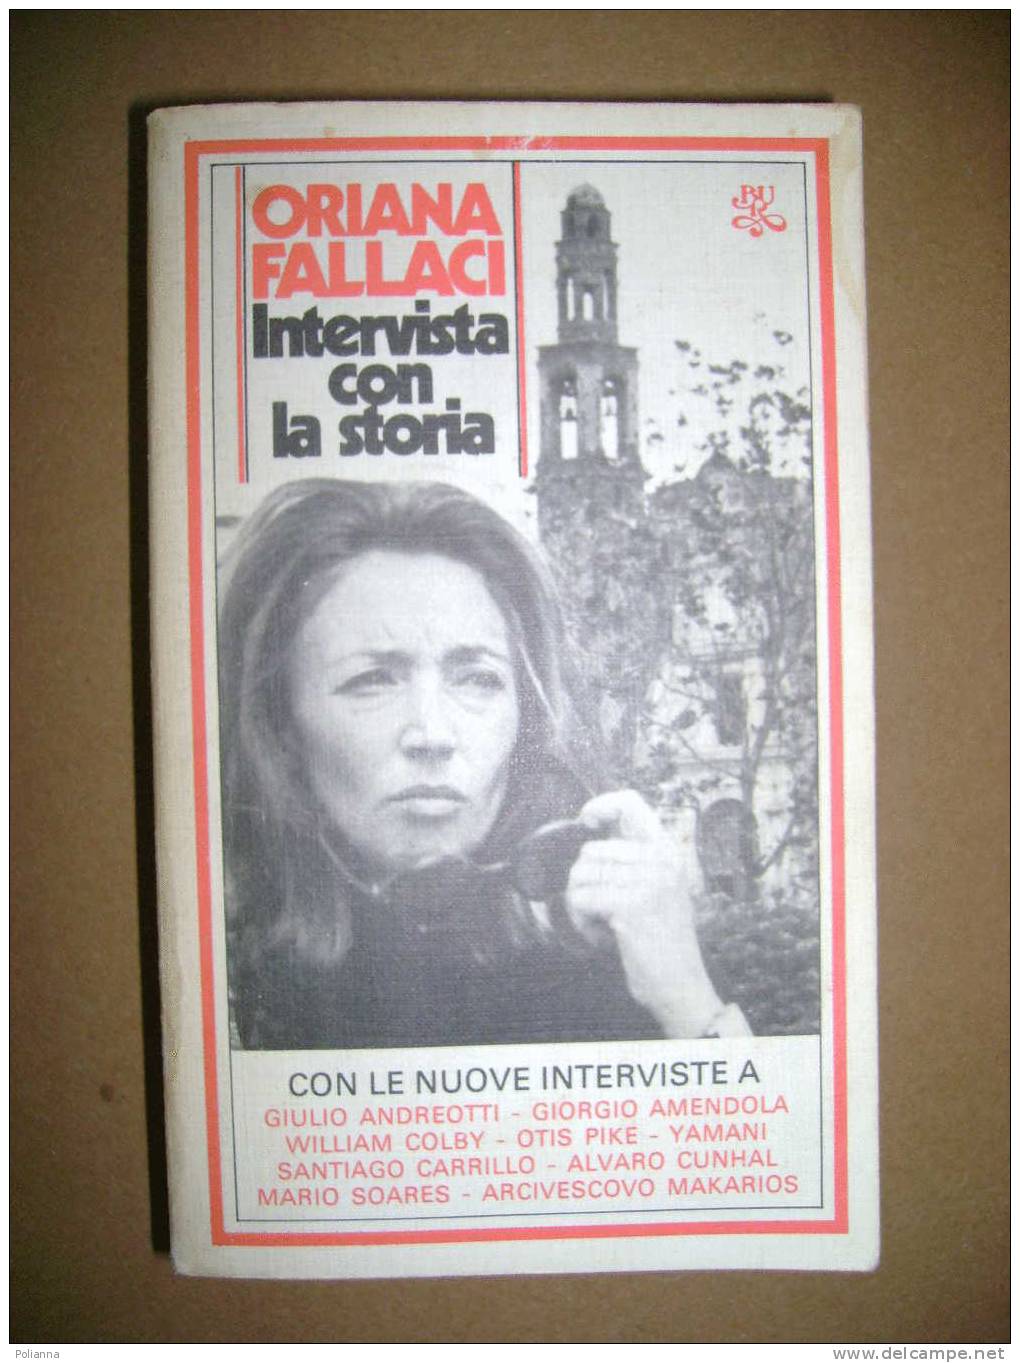 PAC/20 Oriana Fallaci INTERVISTA CON LA STORIA Bur Rizzoli 1980 - Journalism